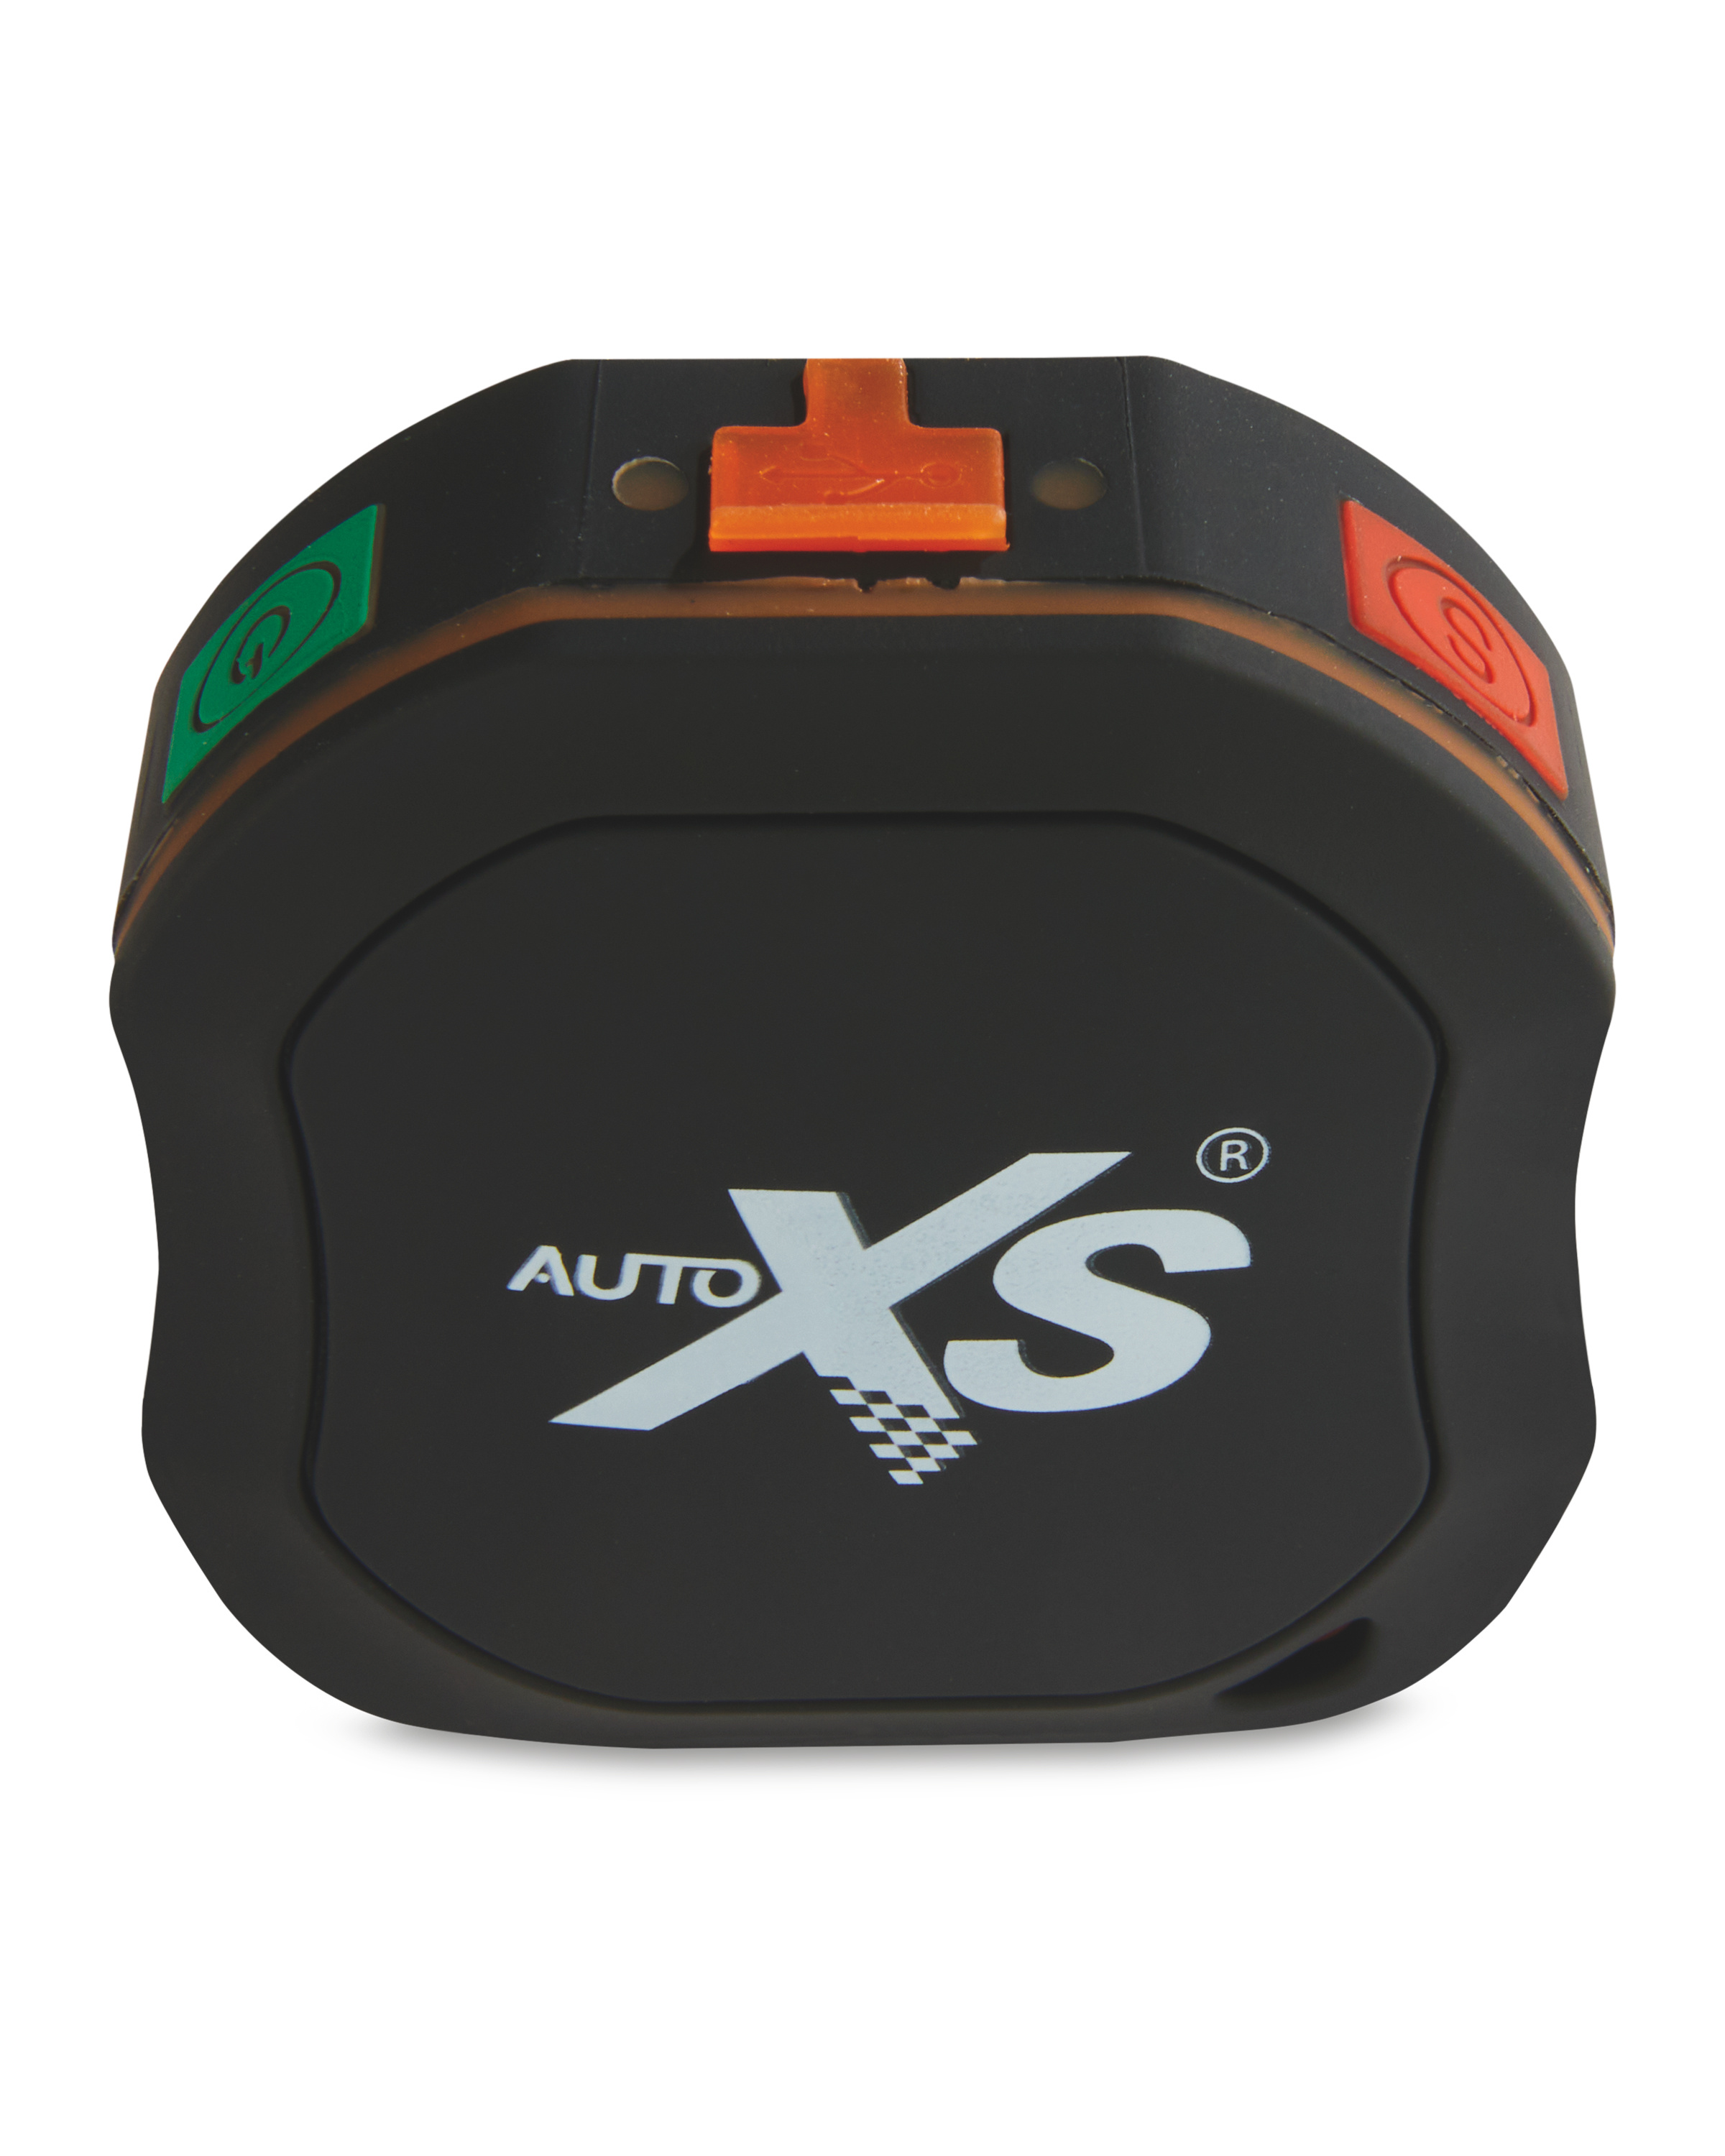 patrulje mørk udelukkende Auto XS GPS Vehicle Tracker - ALDI UK